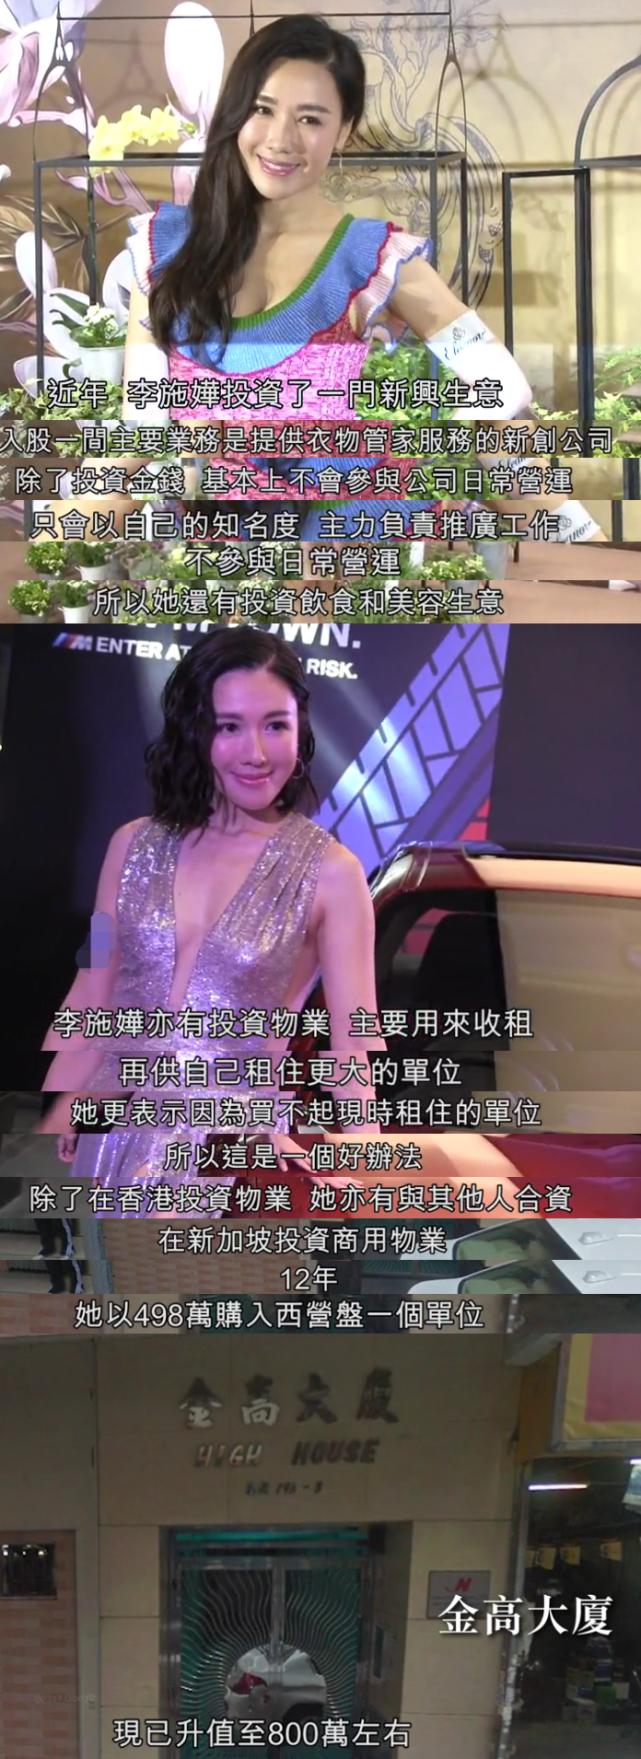 刚得奖的TVB女艺人曾买基金亏本 如今投资物业做生意成功换豪车